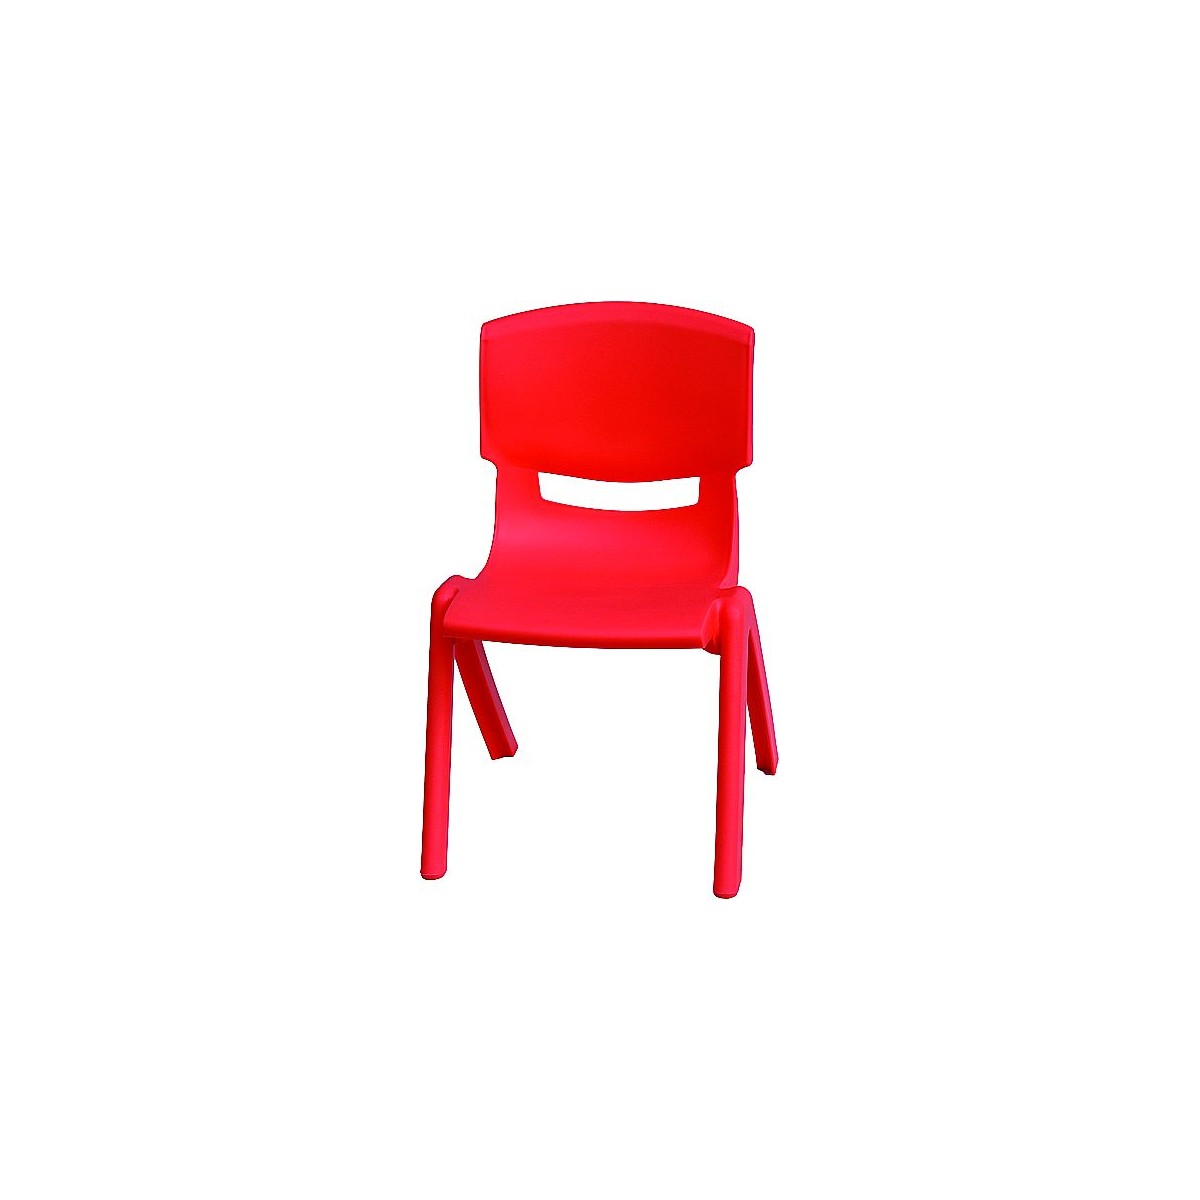 Chaise plastique enfant rouge